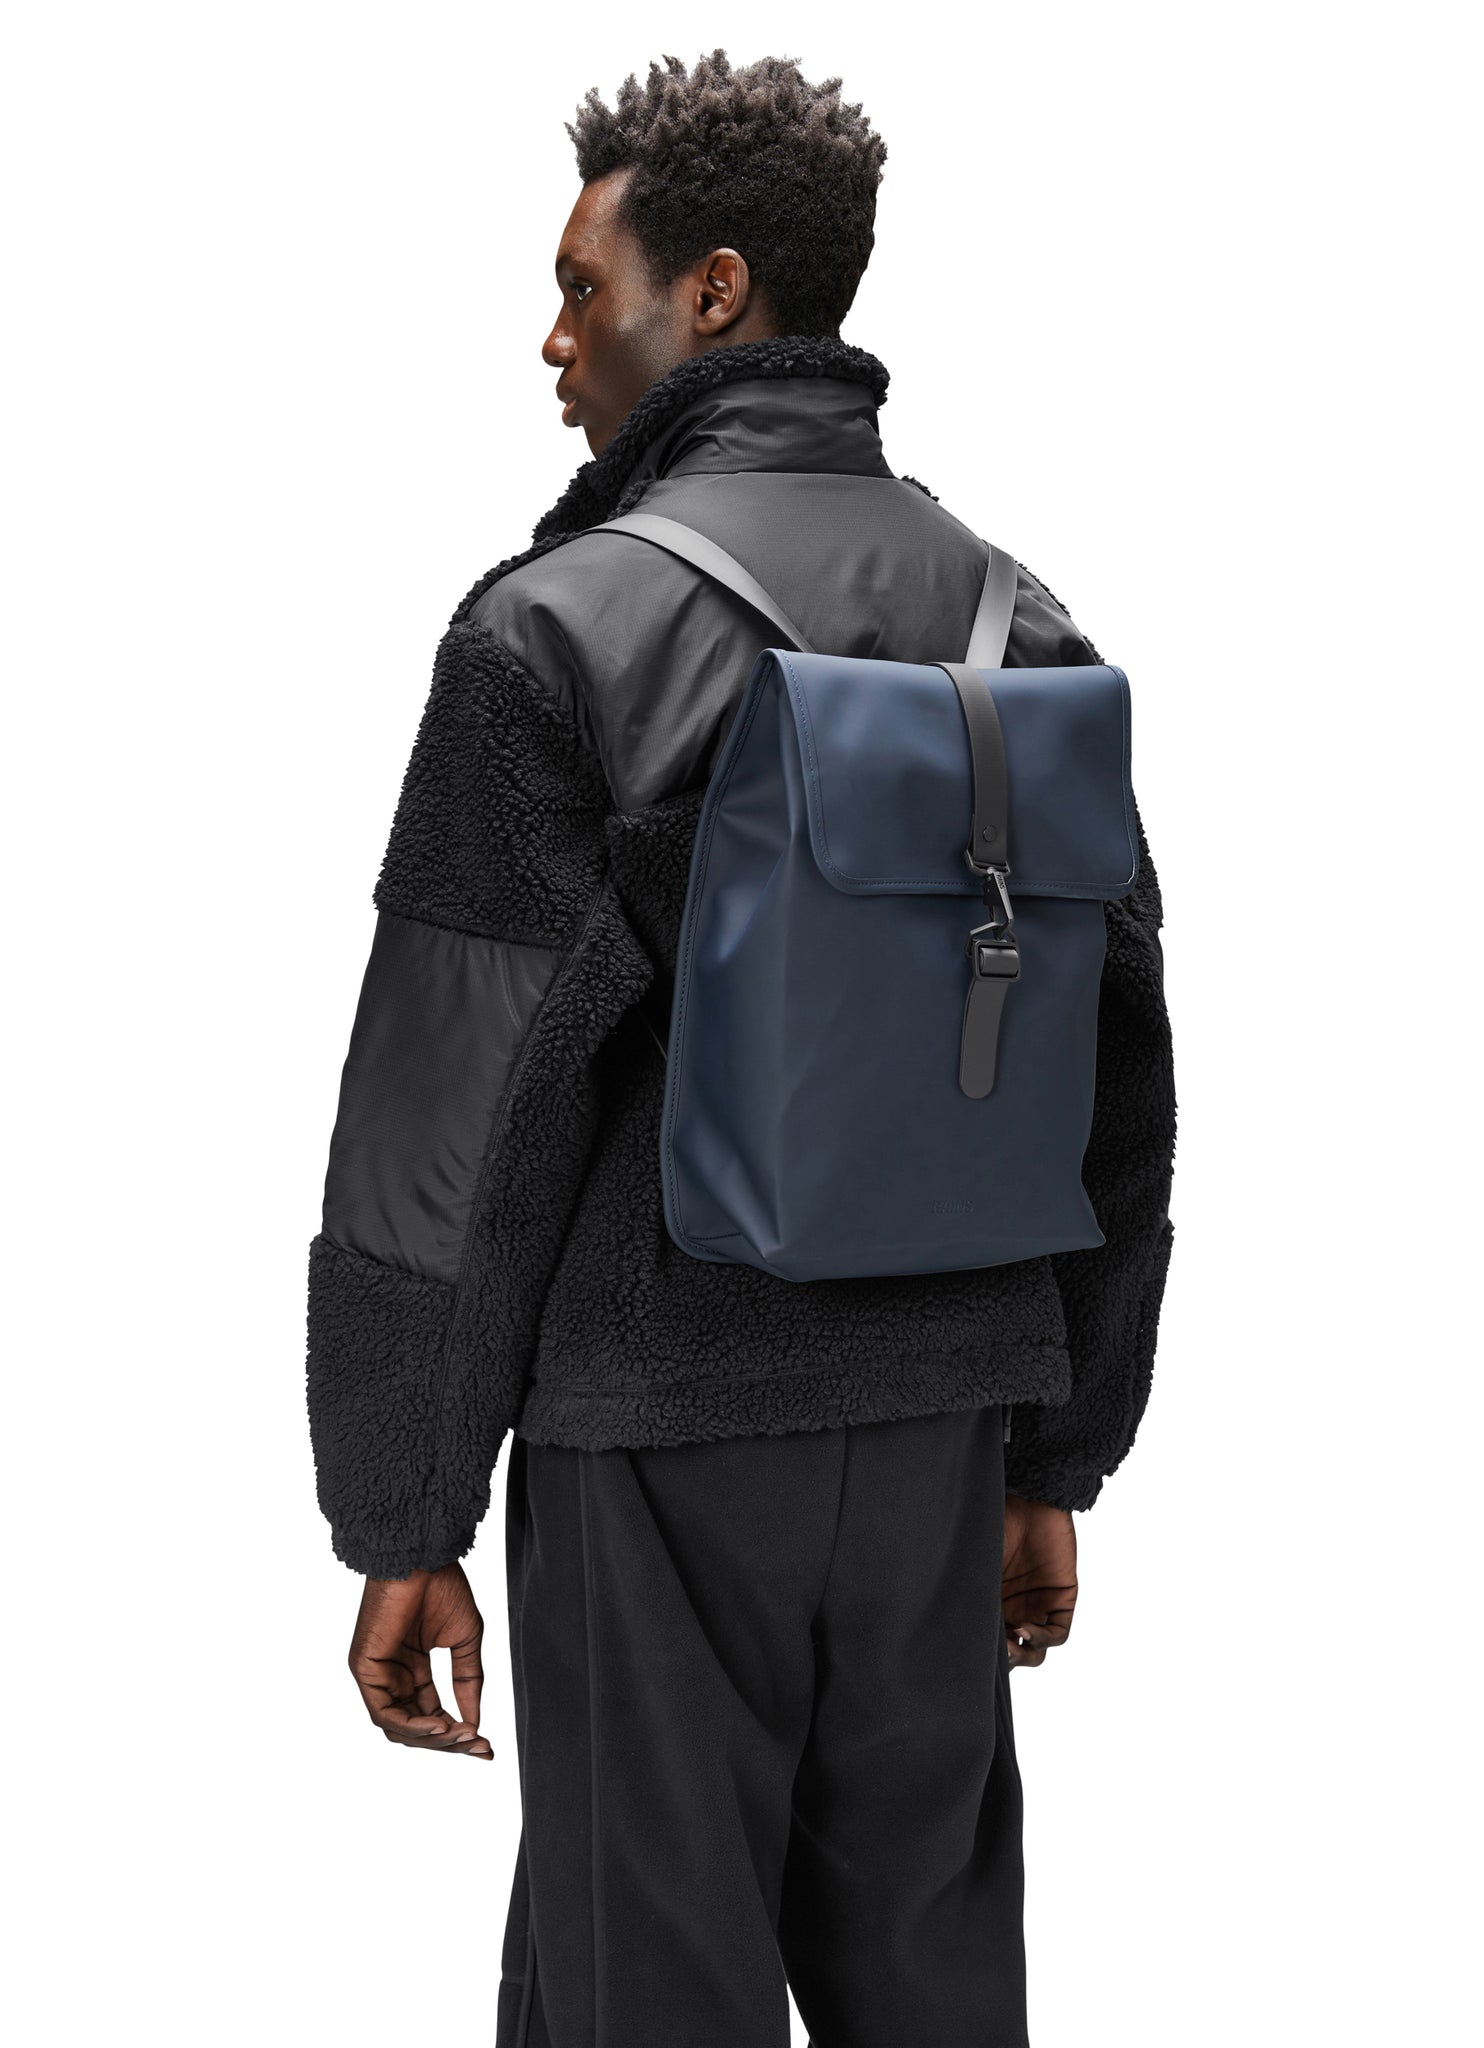 Blue Rucksack Backpack